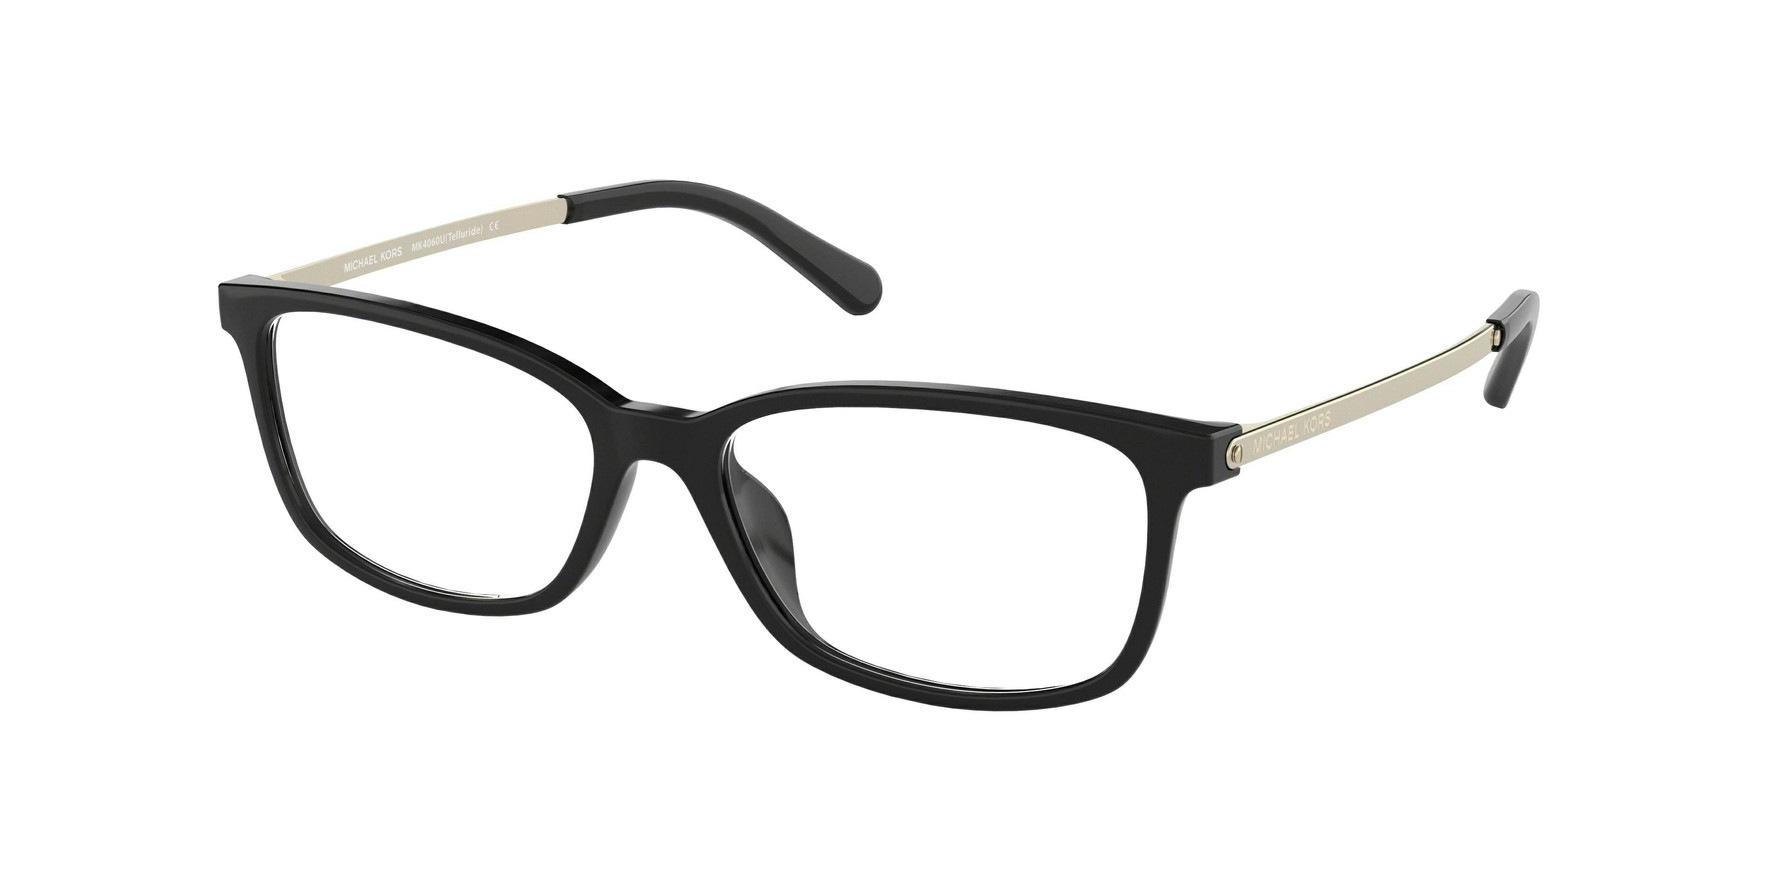 Michael Kors MK4060U TELLURIDE Eyeglasses - Michael Kors Authorized ...